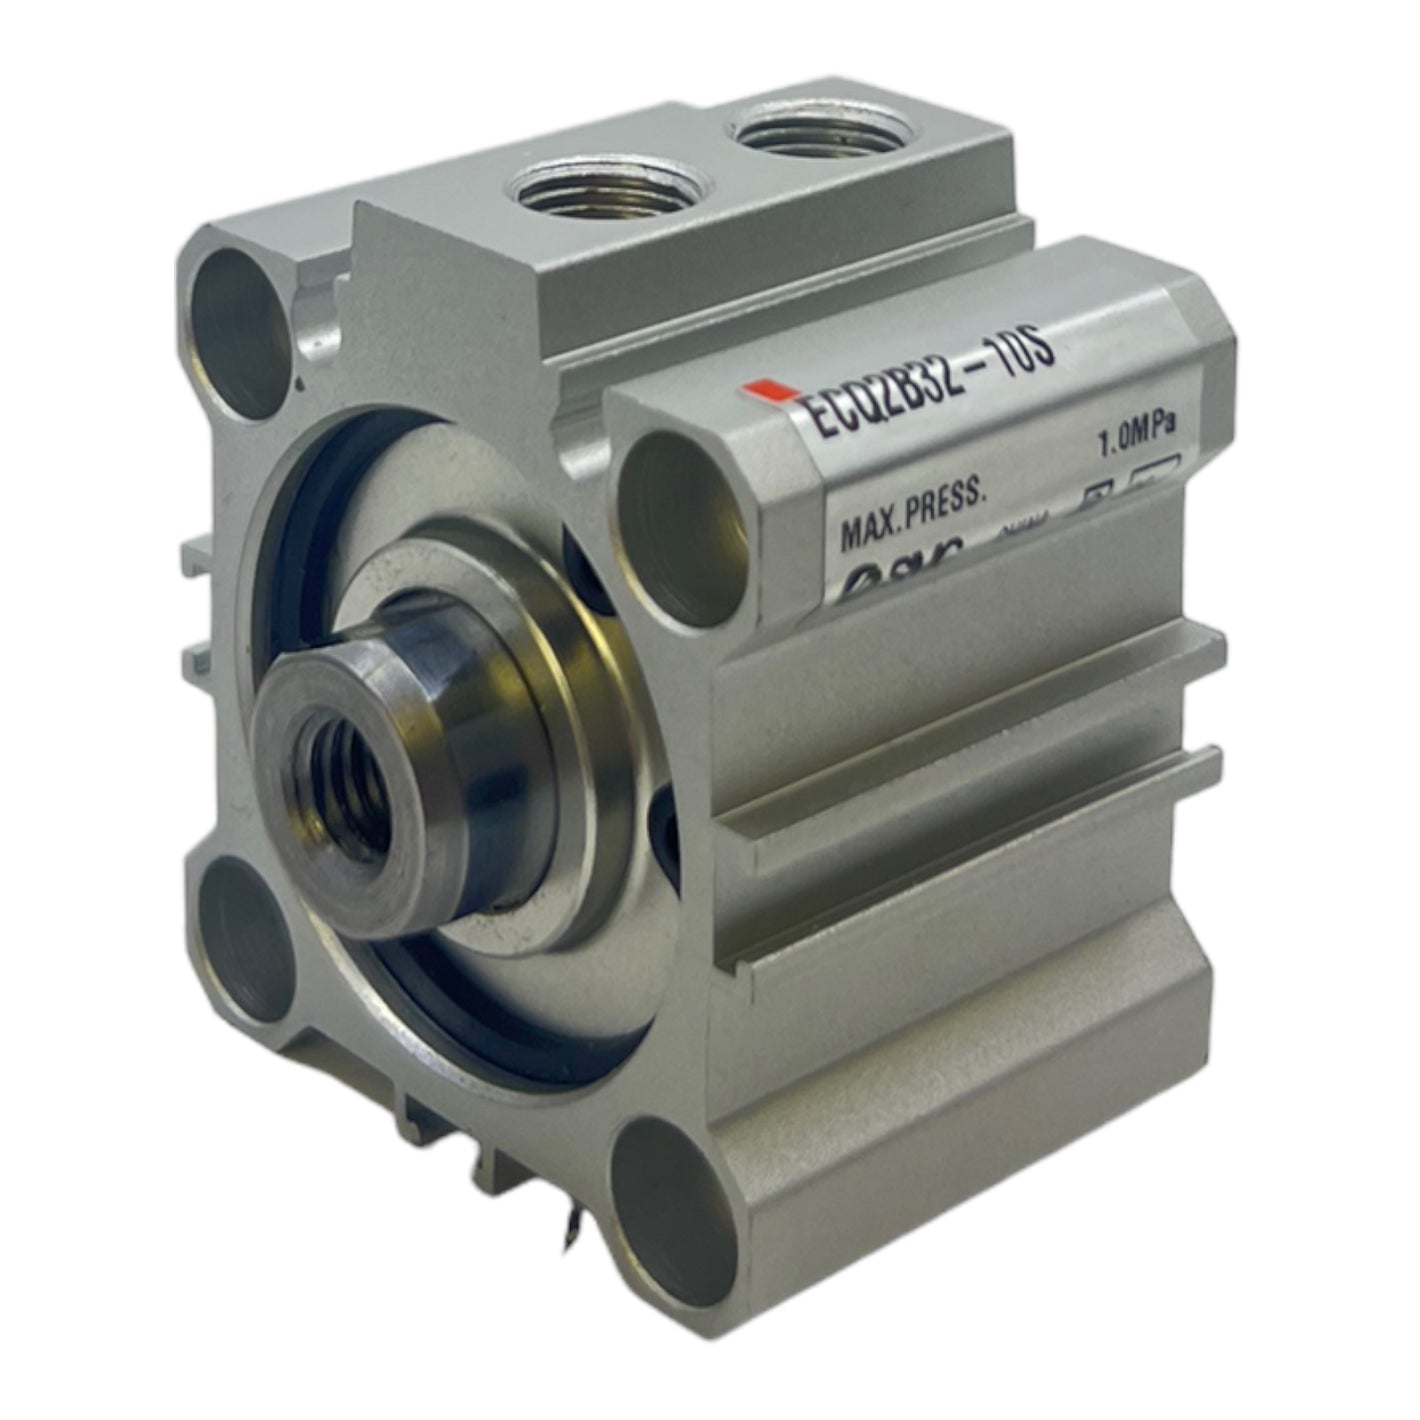 SMC ECQ2B32-10S Kurzhubzylinder Pneumatikzylinder max Press 1,0MPa